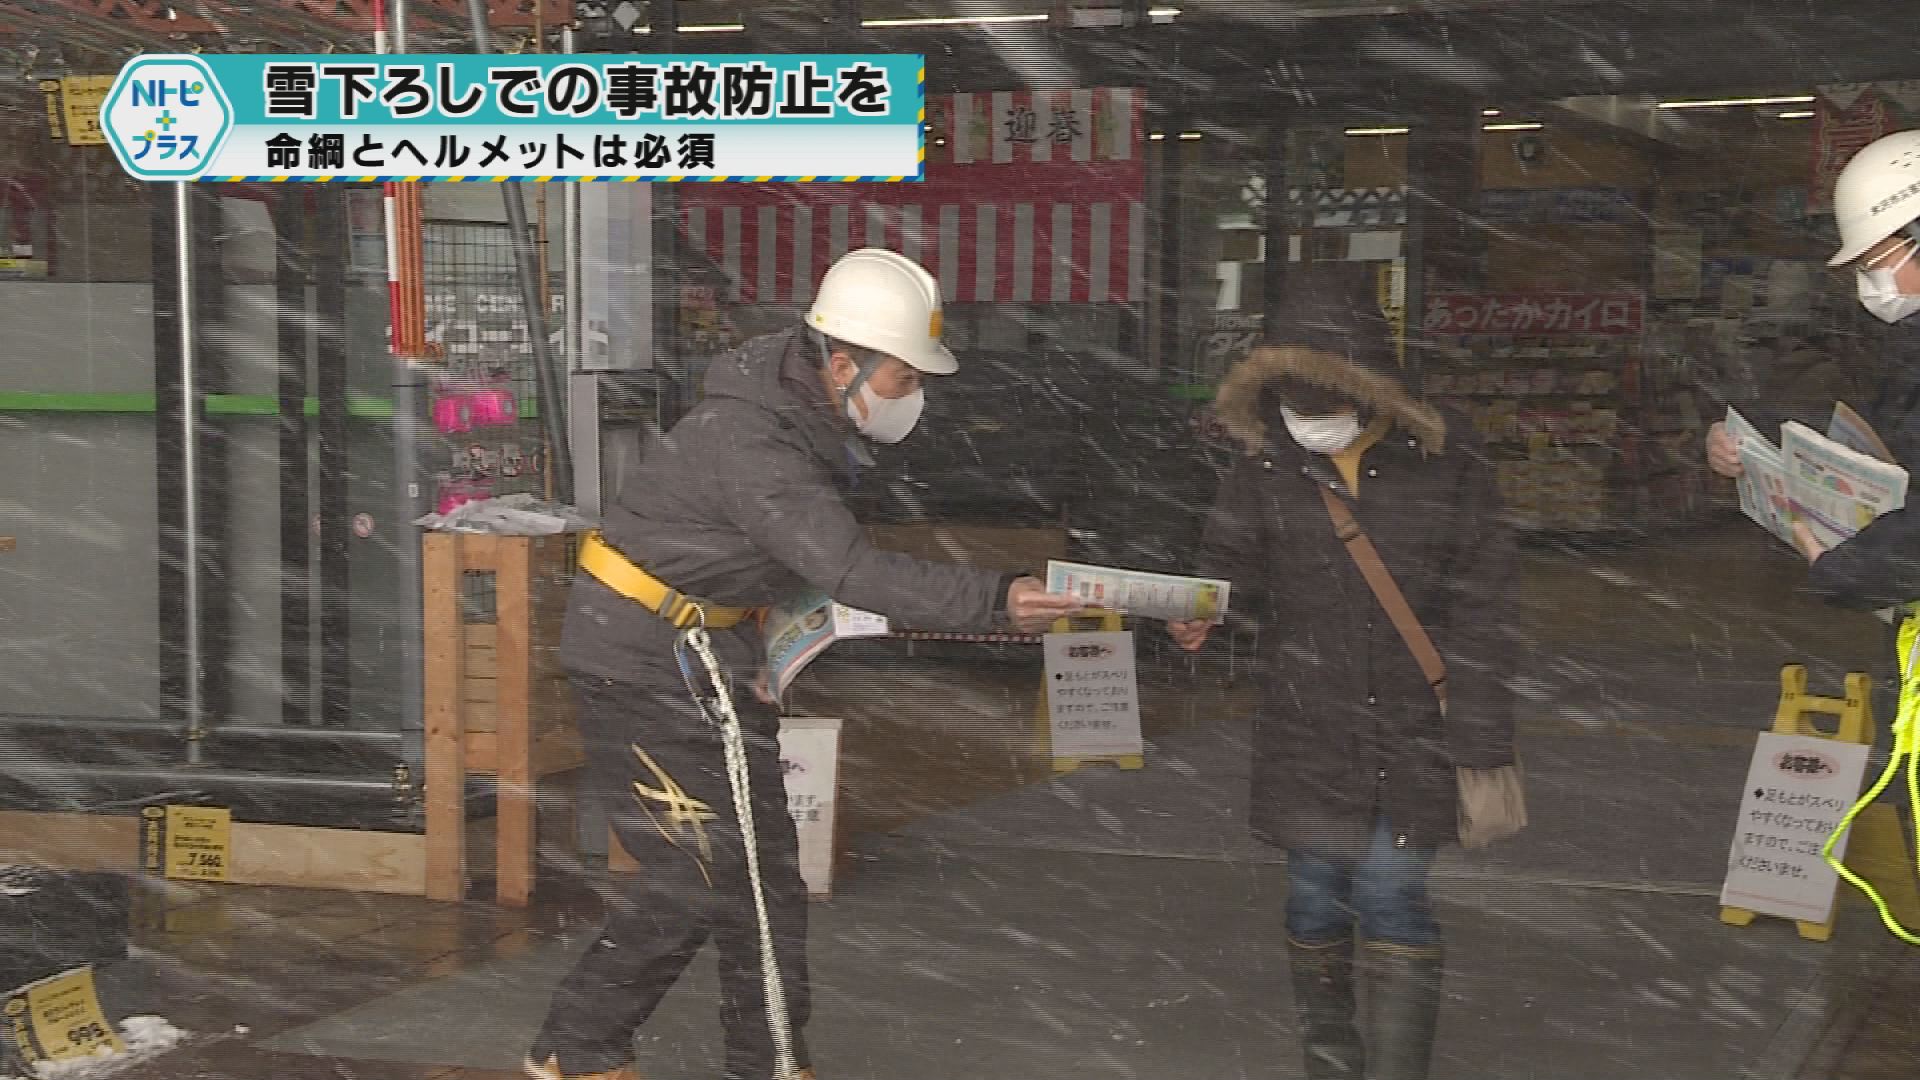 「雪下ろしでの事故防止を」命綱とヘルメットは必須